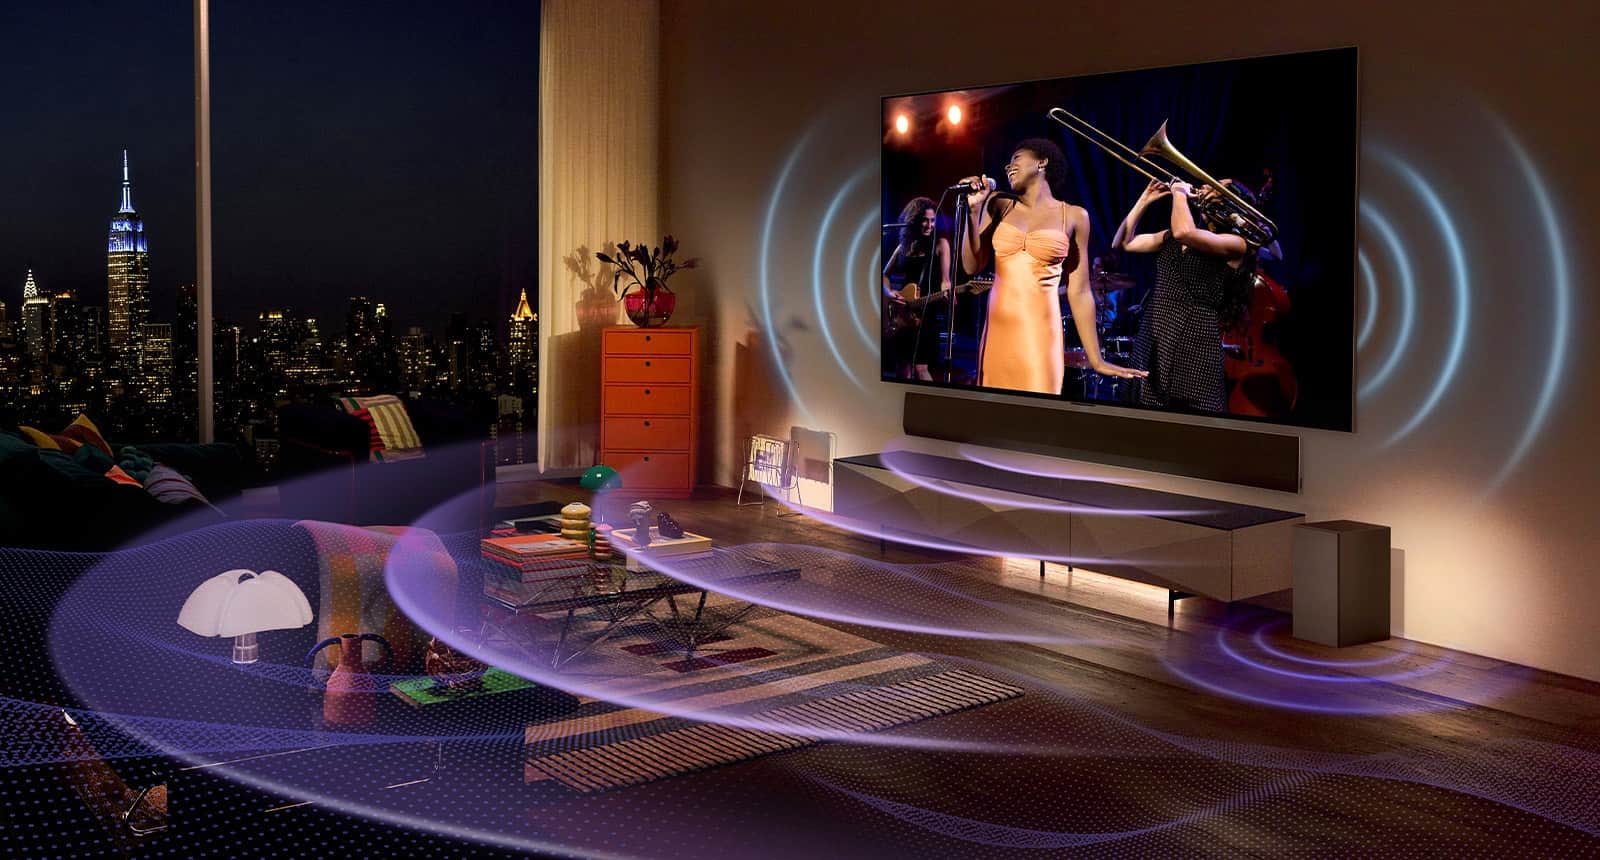 Фото OLED-телевізора LG у приміщенні. Телевізор показує сцену з концерту. Сині вигнуті лінії, що представляють звук, що надходить із телевізора, і фіолетові вигнуті лінії, що представляють звук, що надходить із звукової панелі, заповнюють простір.